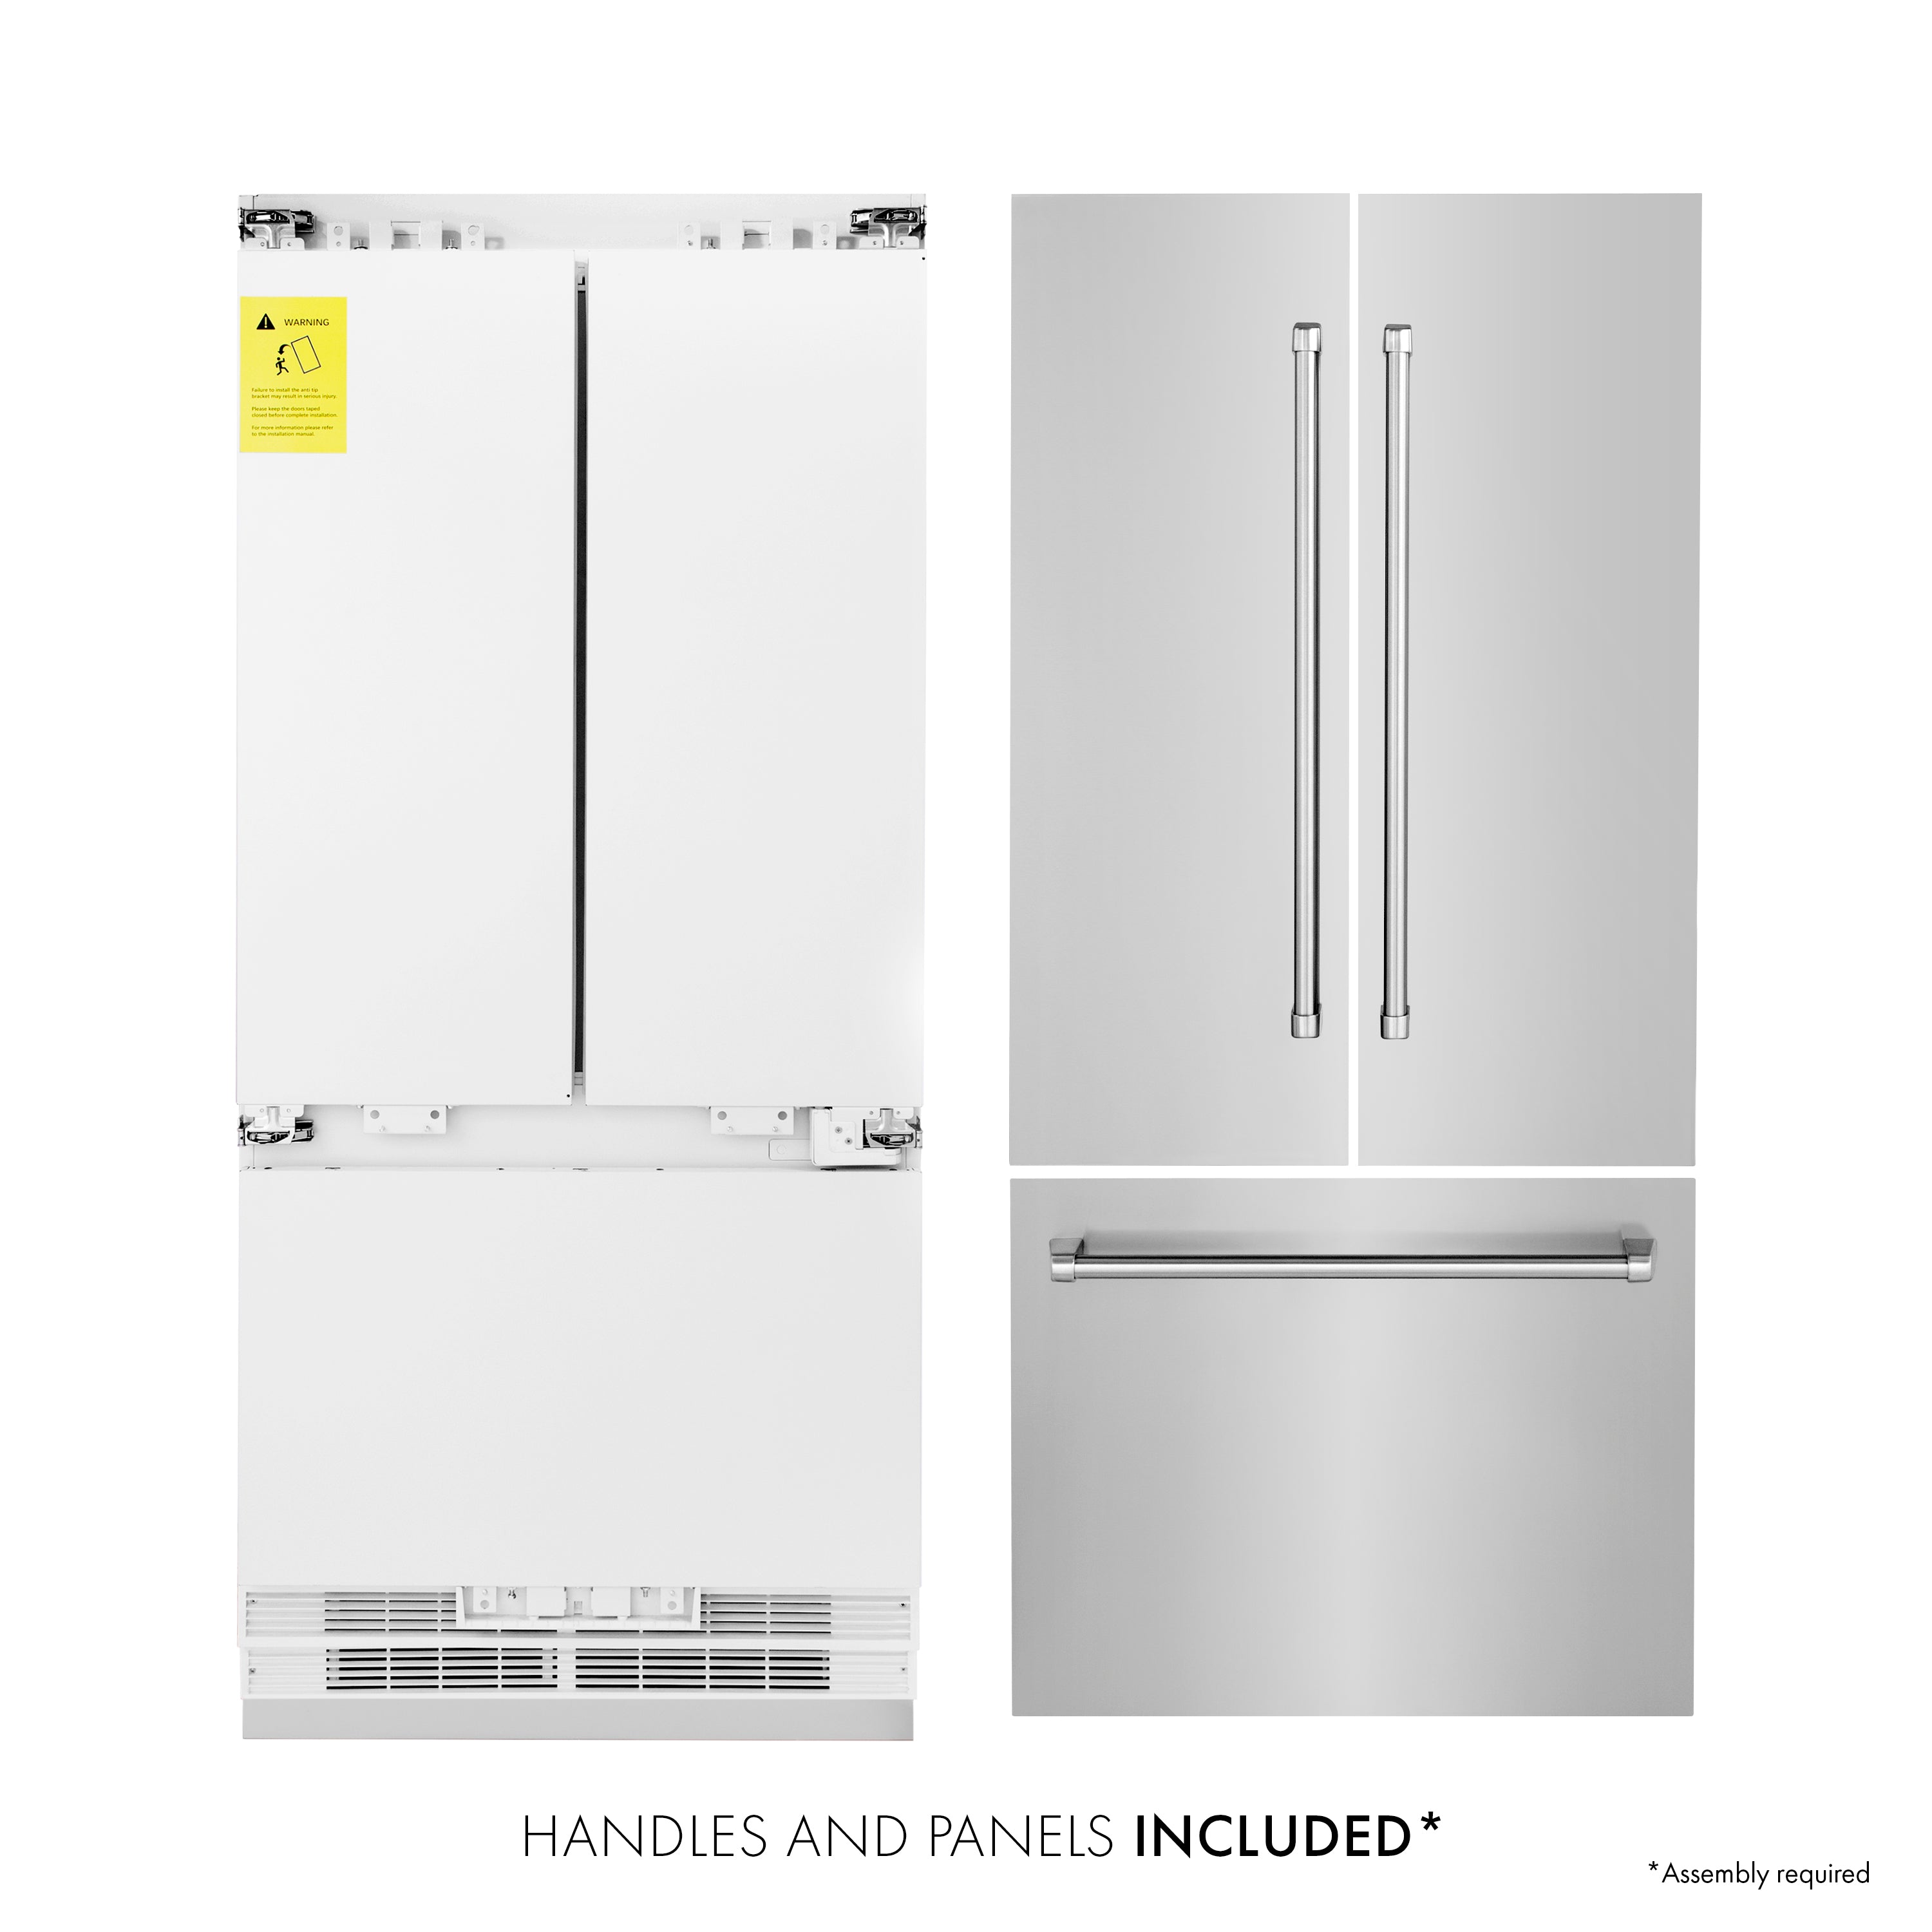 ZLINE 36" 19.6 cu. ft. Built-In 3-Door French Door Refrigerator with Internal Water and Ice Dispenser in Stainless Steel